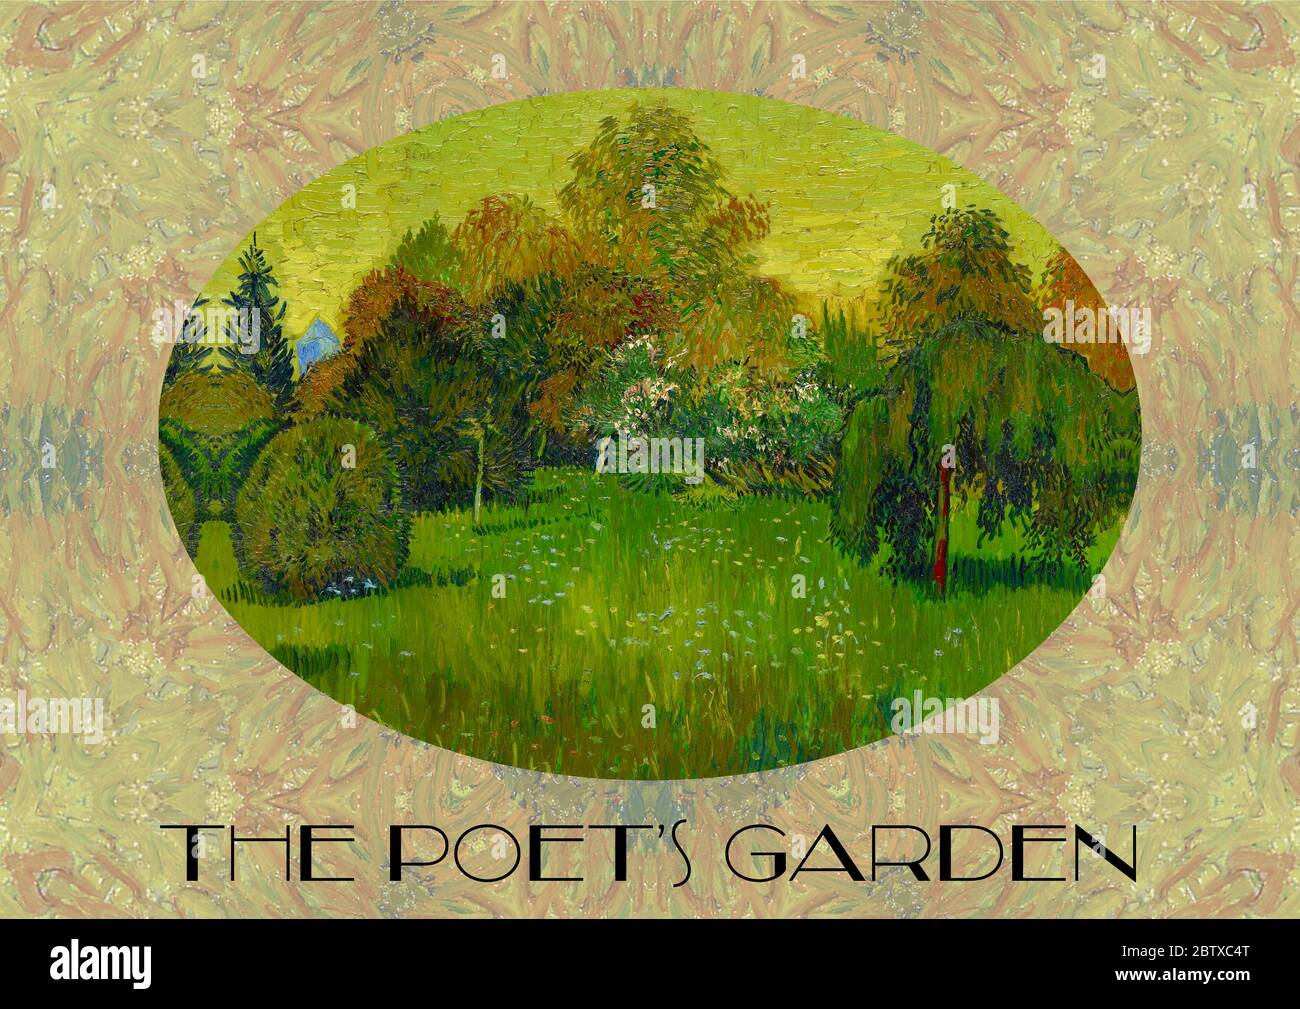 El Instituto de Arte de Chicago tiene una serie de obras de arte del artista holandés Vincent van Gogh. Estas imágenes se basan en una obra llamada el Jardín del poeta. Foto de stock